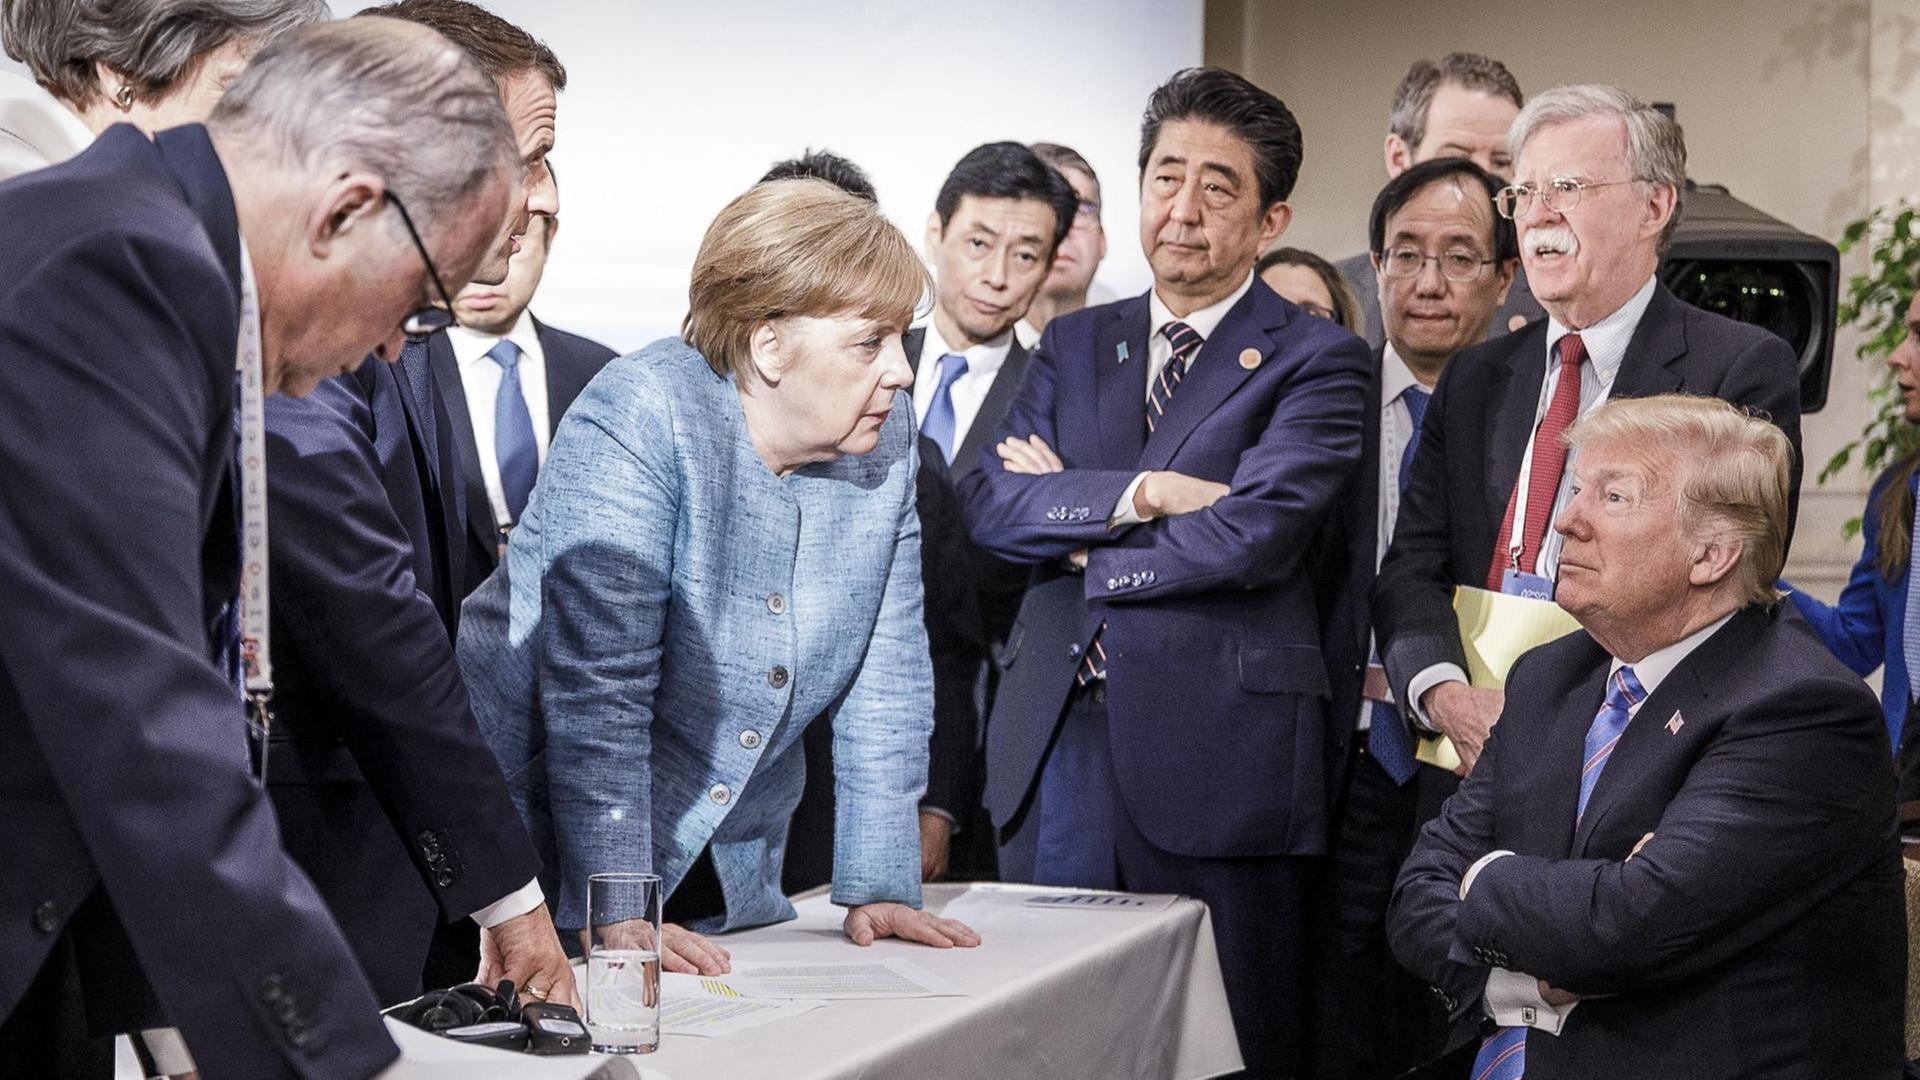 Angela Merkel und Donald Trump während des G7-Gipfels. Merkel steht vor Trump, aufgestützt auf einen Tisch. Trump sitzt als Einziger und schaut an Merkel vorbei